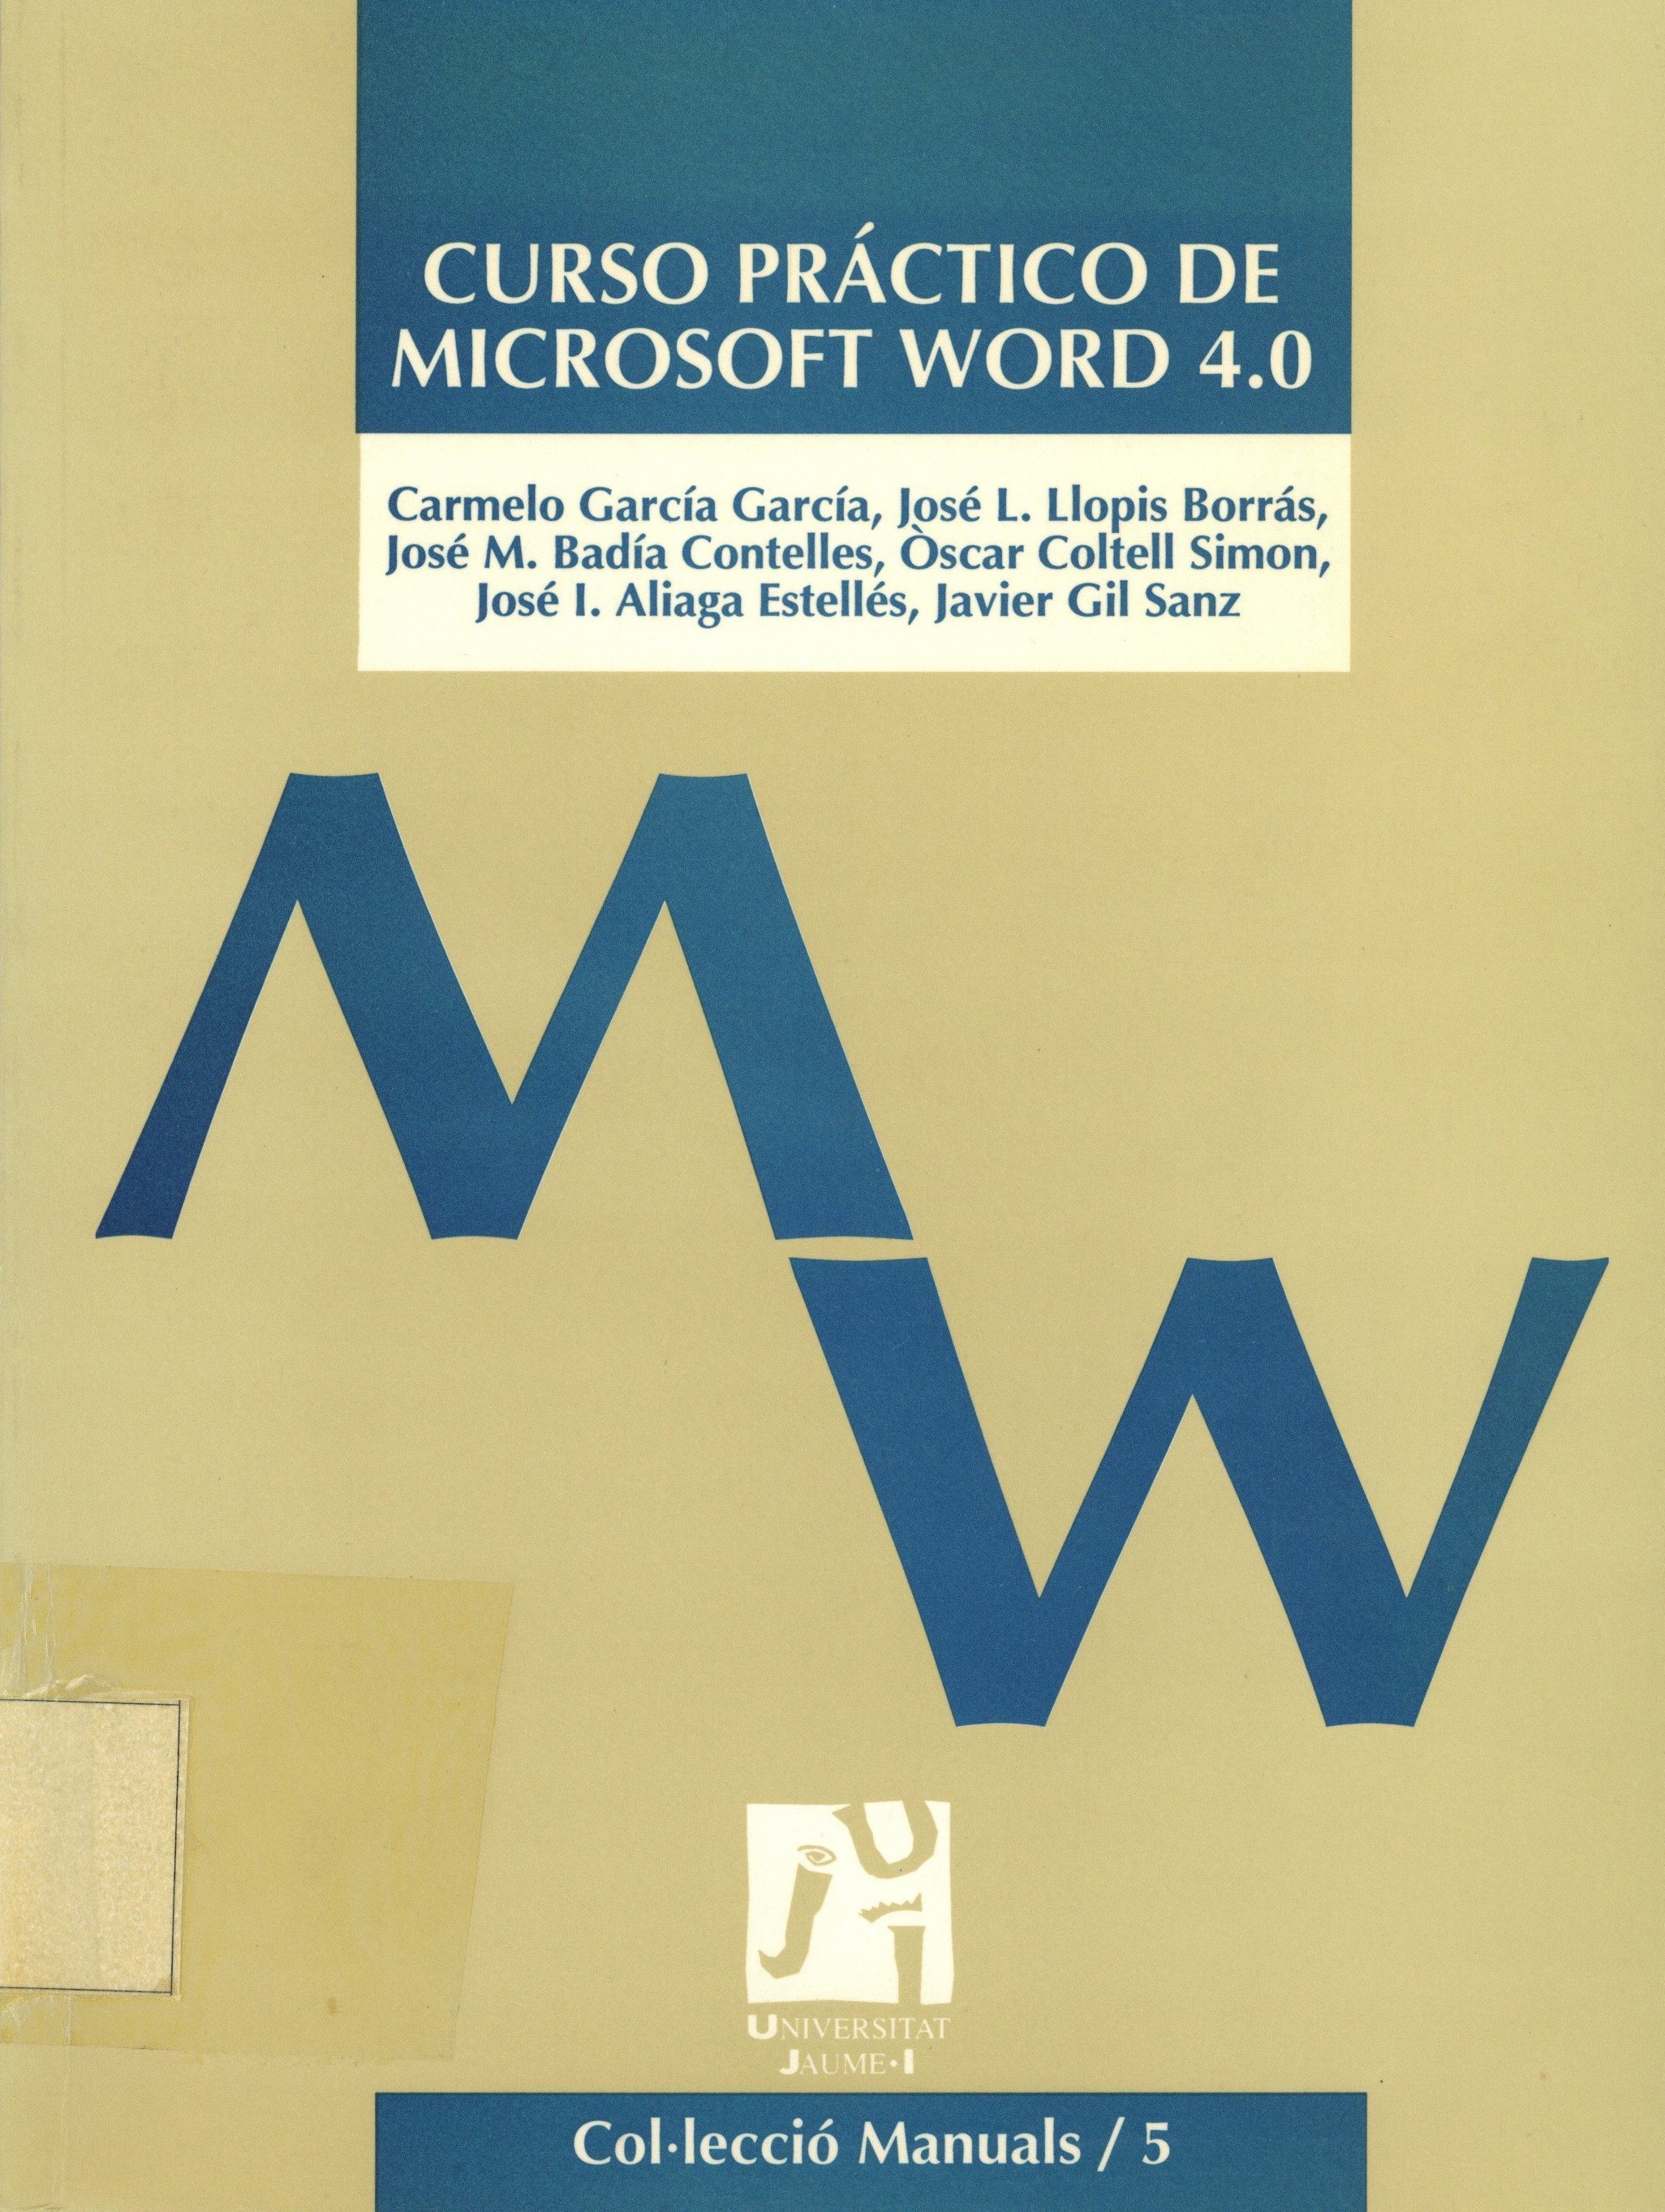 Imagen de portada del libro Curso práctico de Microsoft Word 4.0